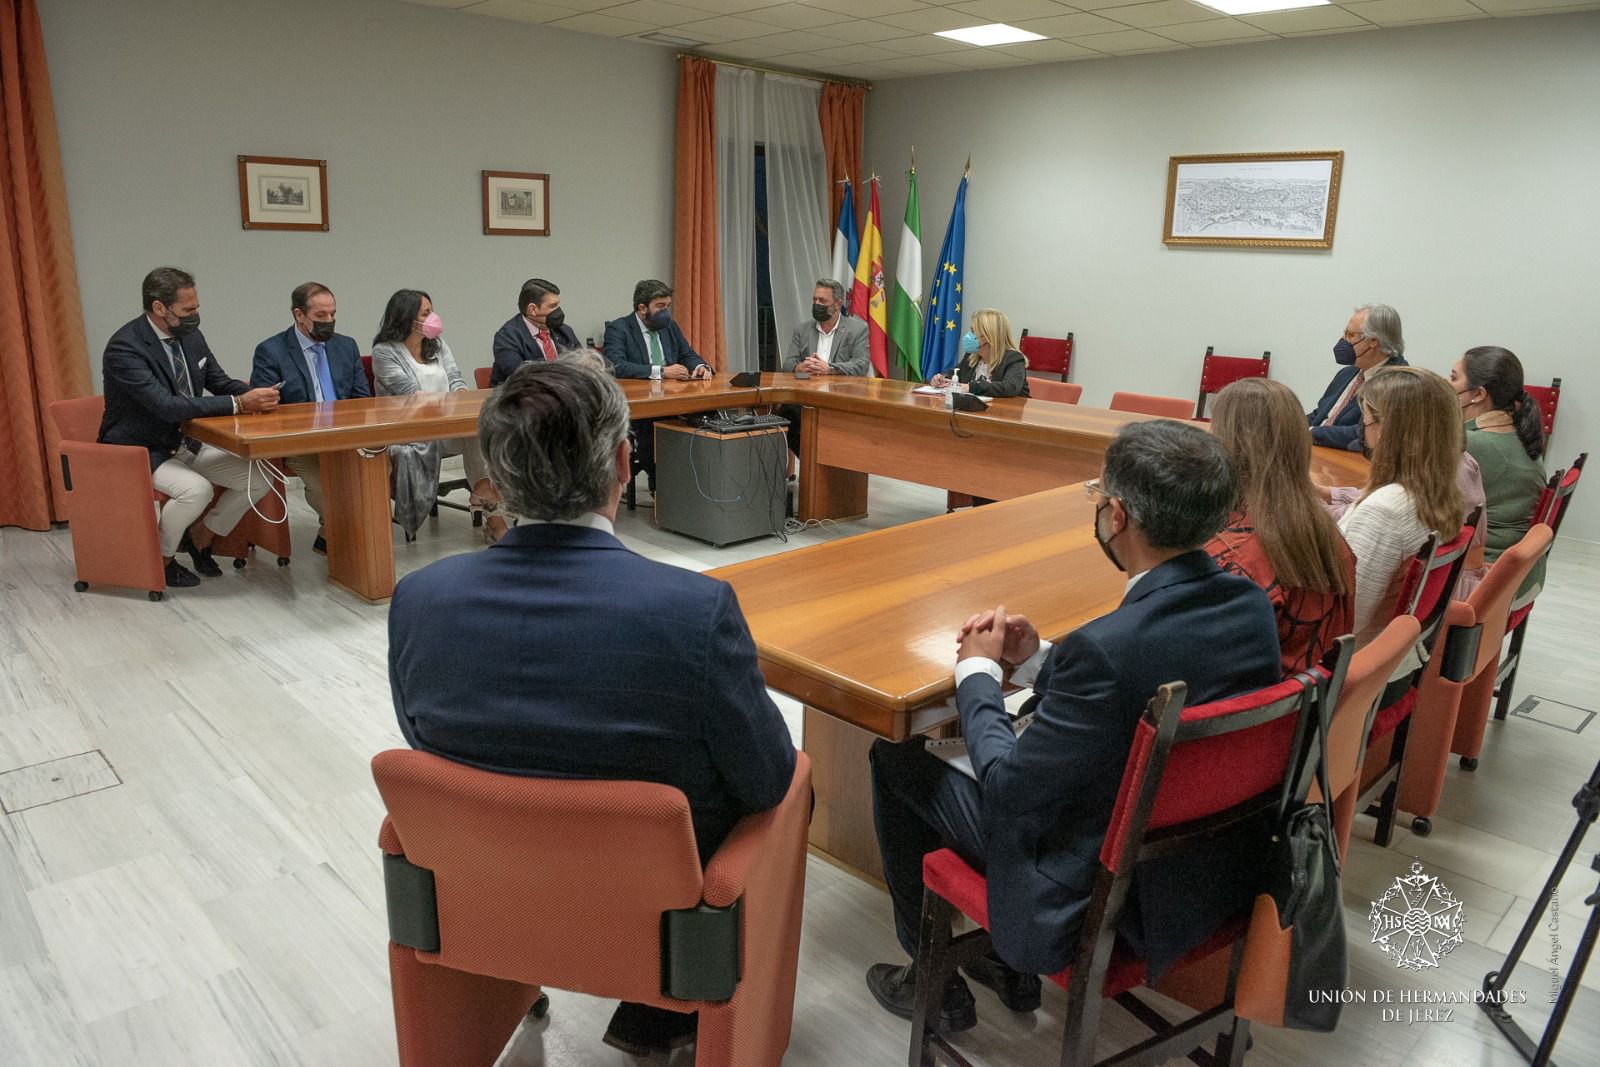 Reunión entre representantes del gobierno de Jerez, con la alcaldesa al frente, y de la Unión de Hermandades, este pasado miércoles.